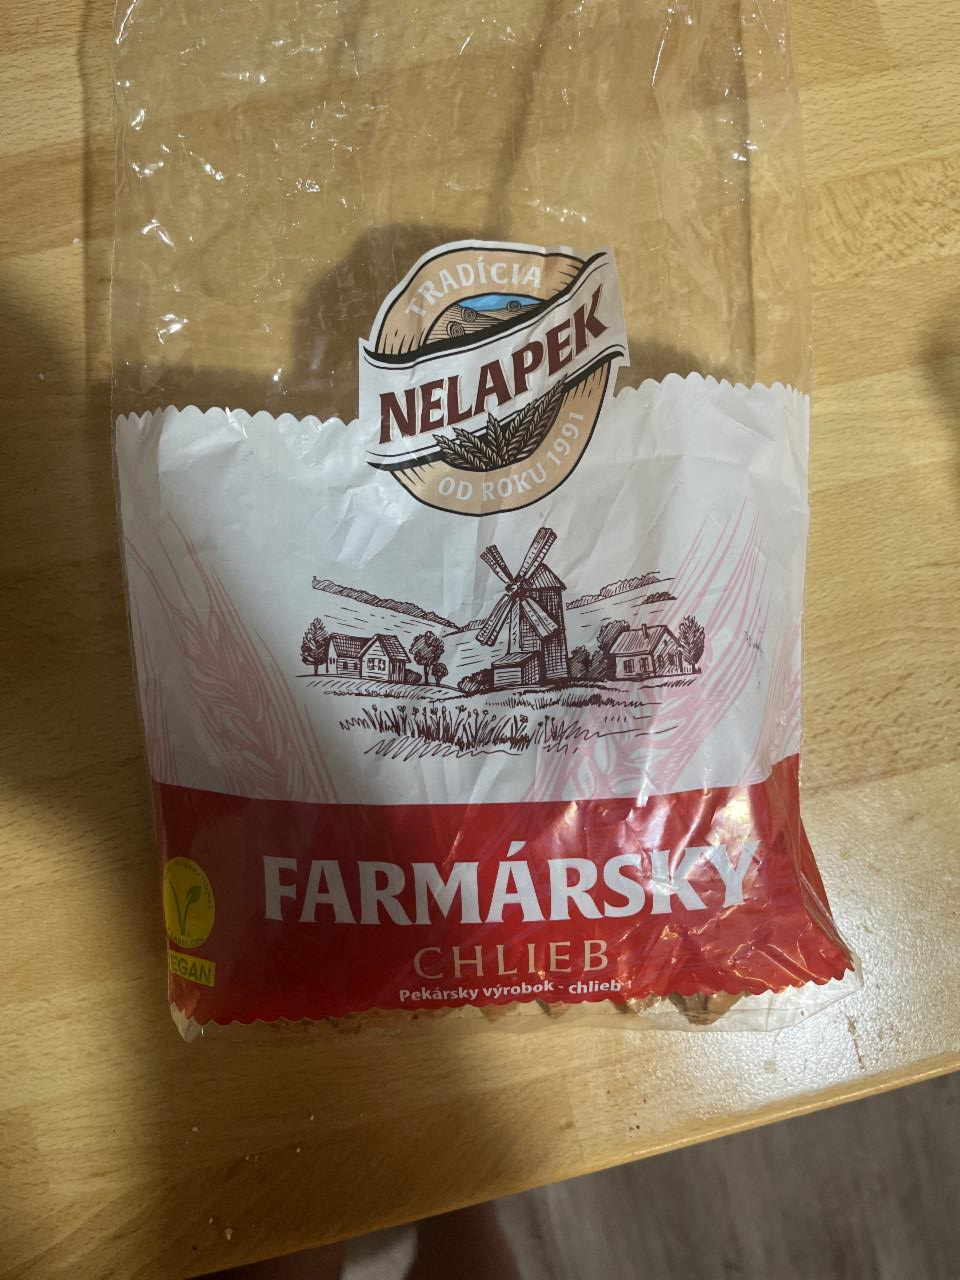 Fotografie - Farmársky chlieb Nelapek